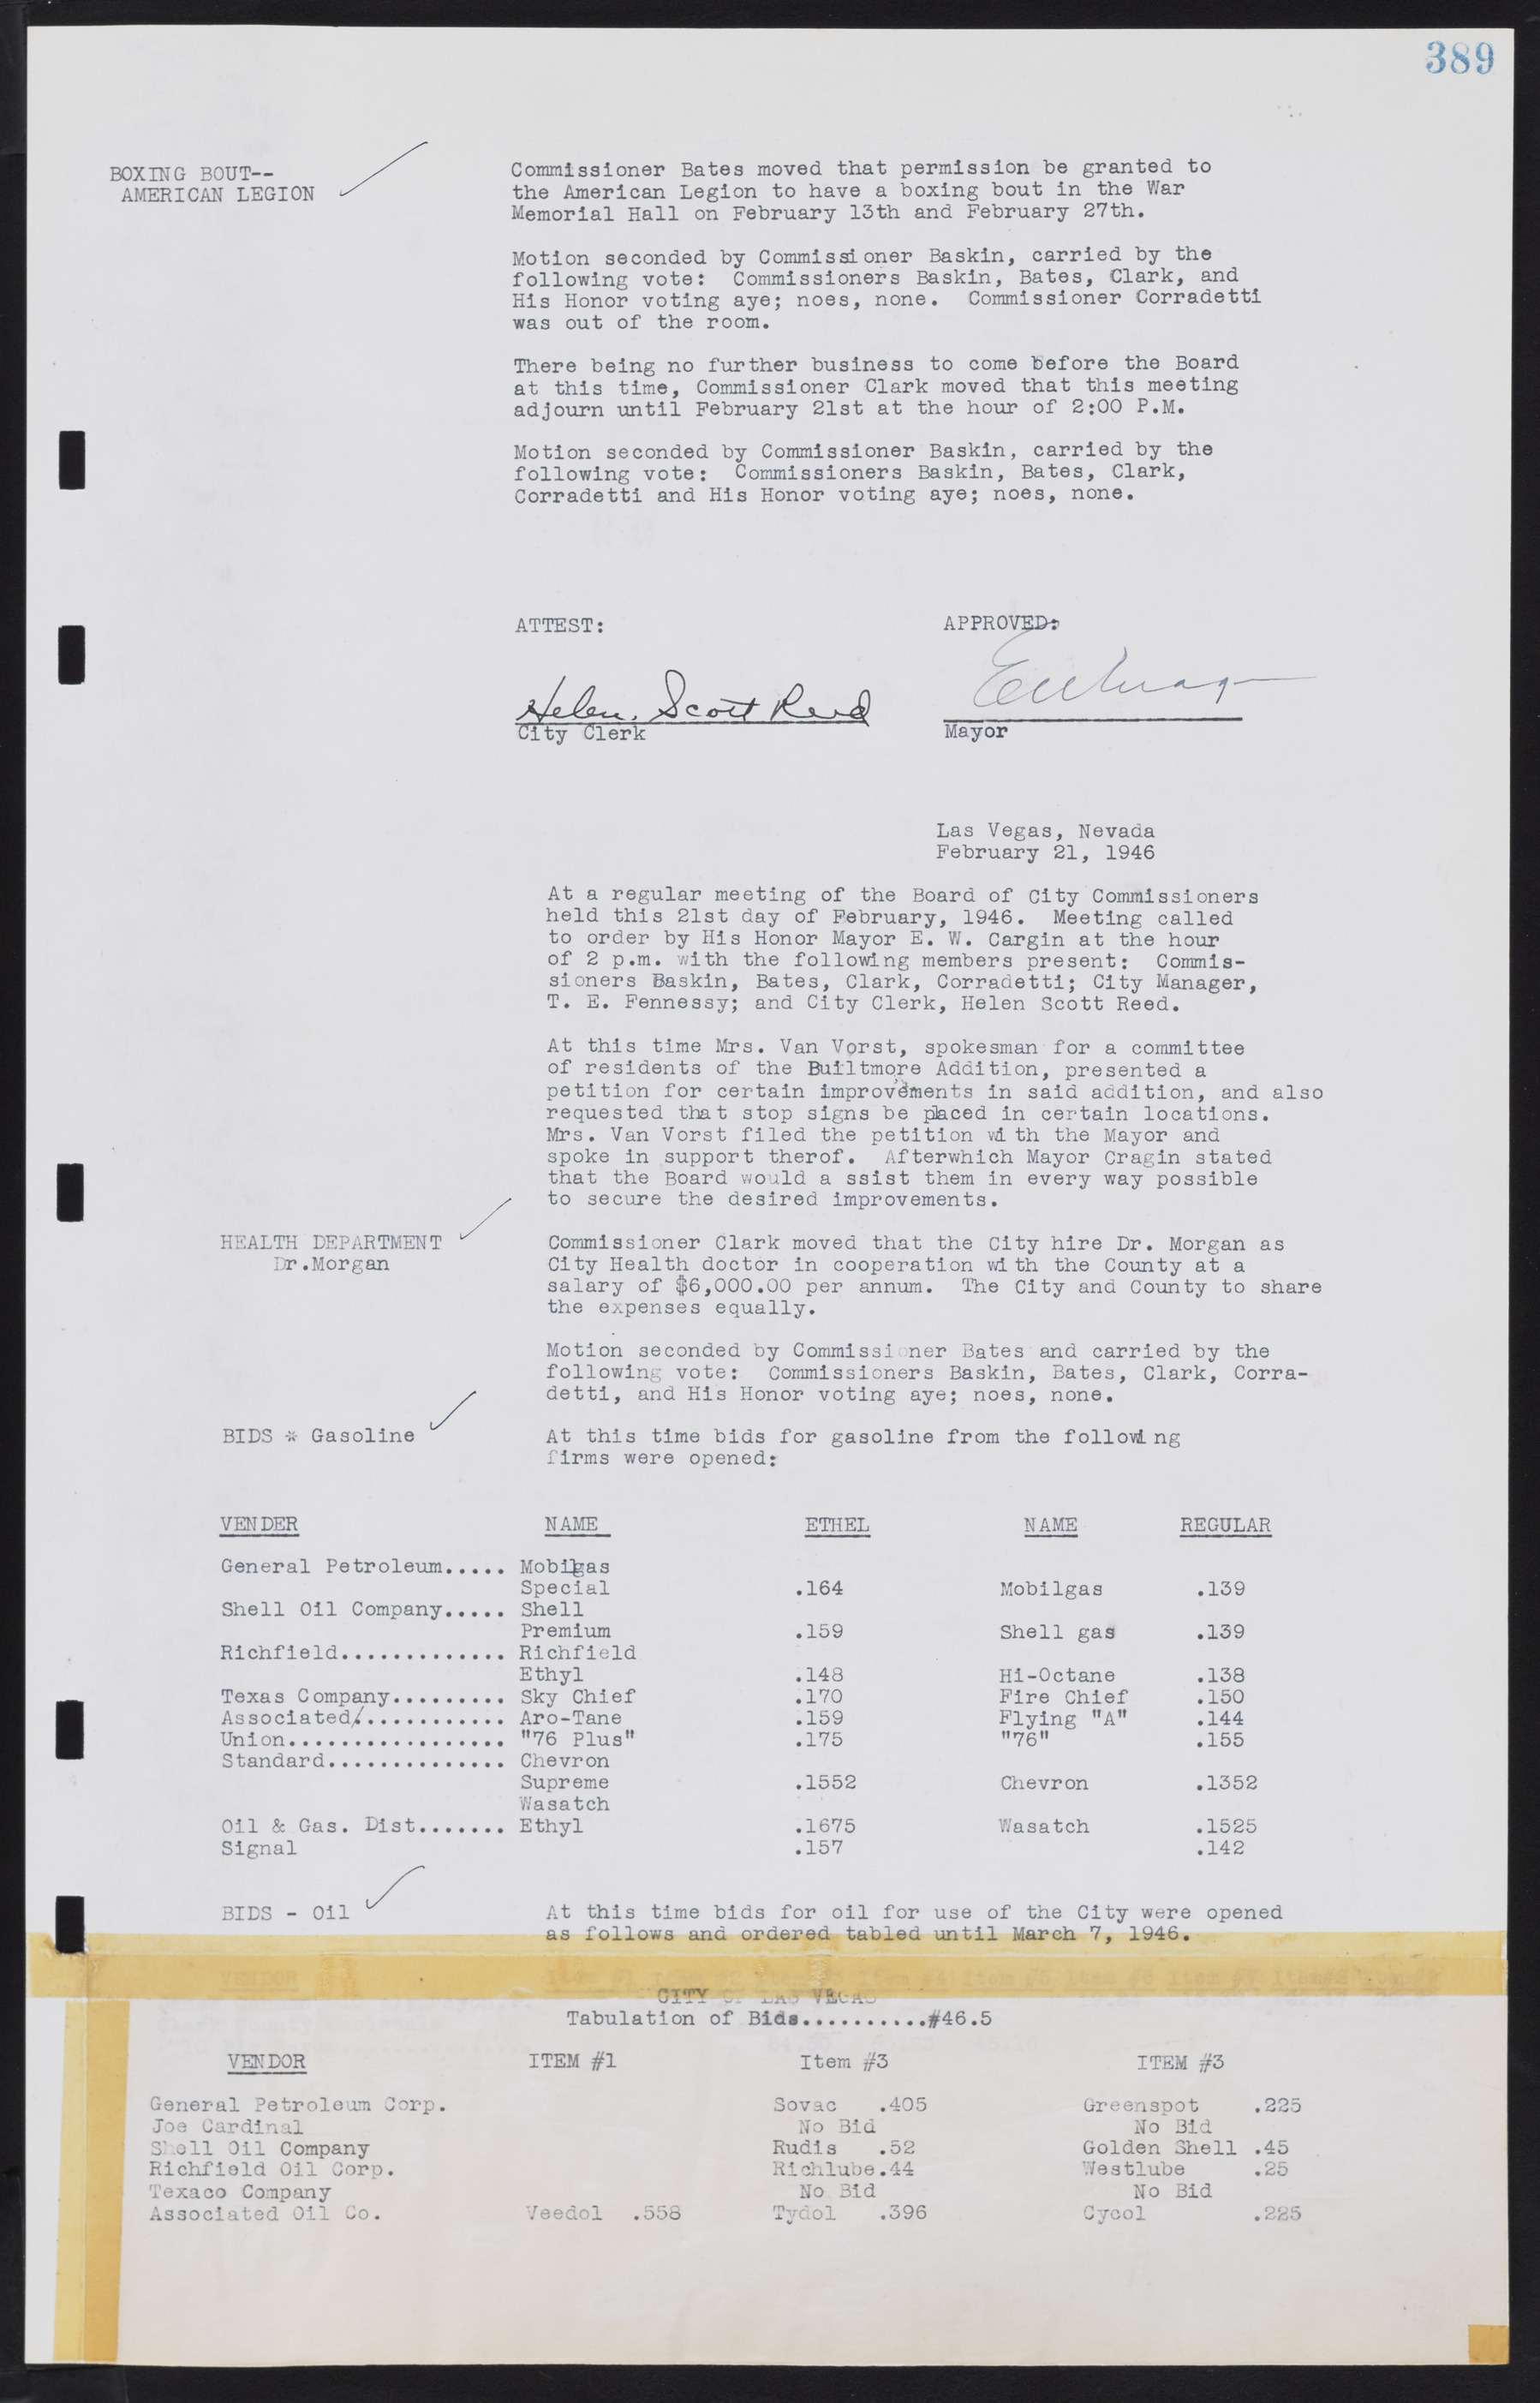 Las Vegas City Commission Minutes, August 11, 1942 to December 30, 1946, lvc000005-416